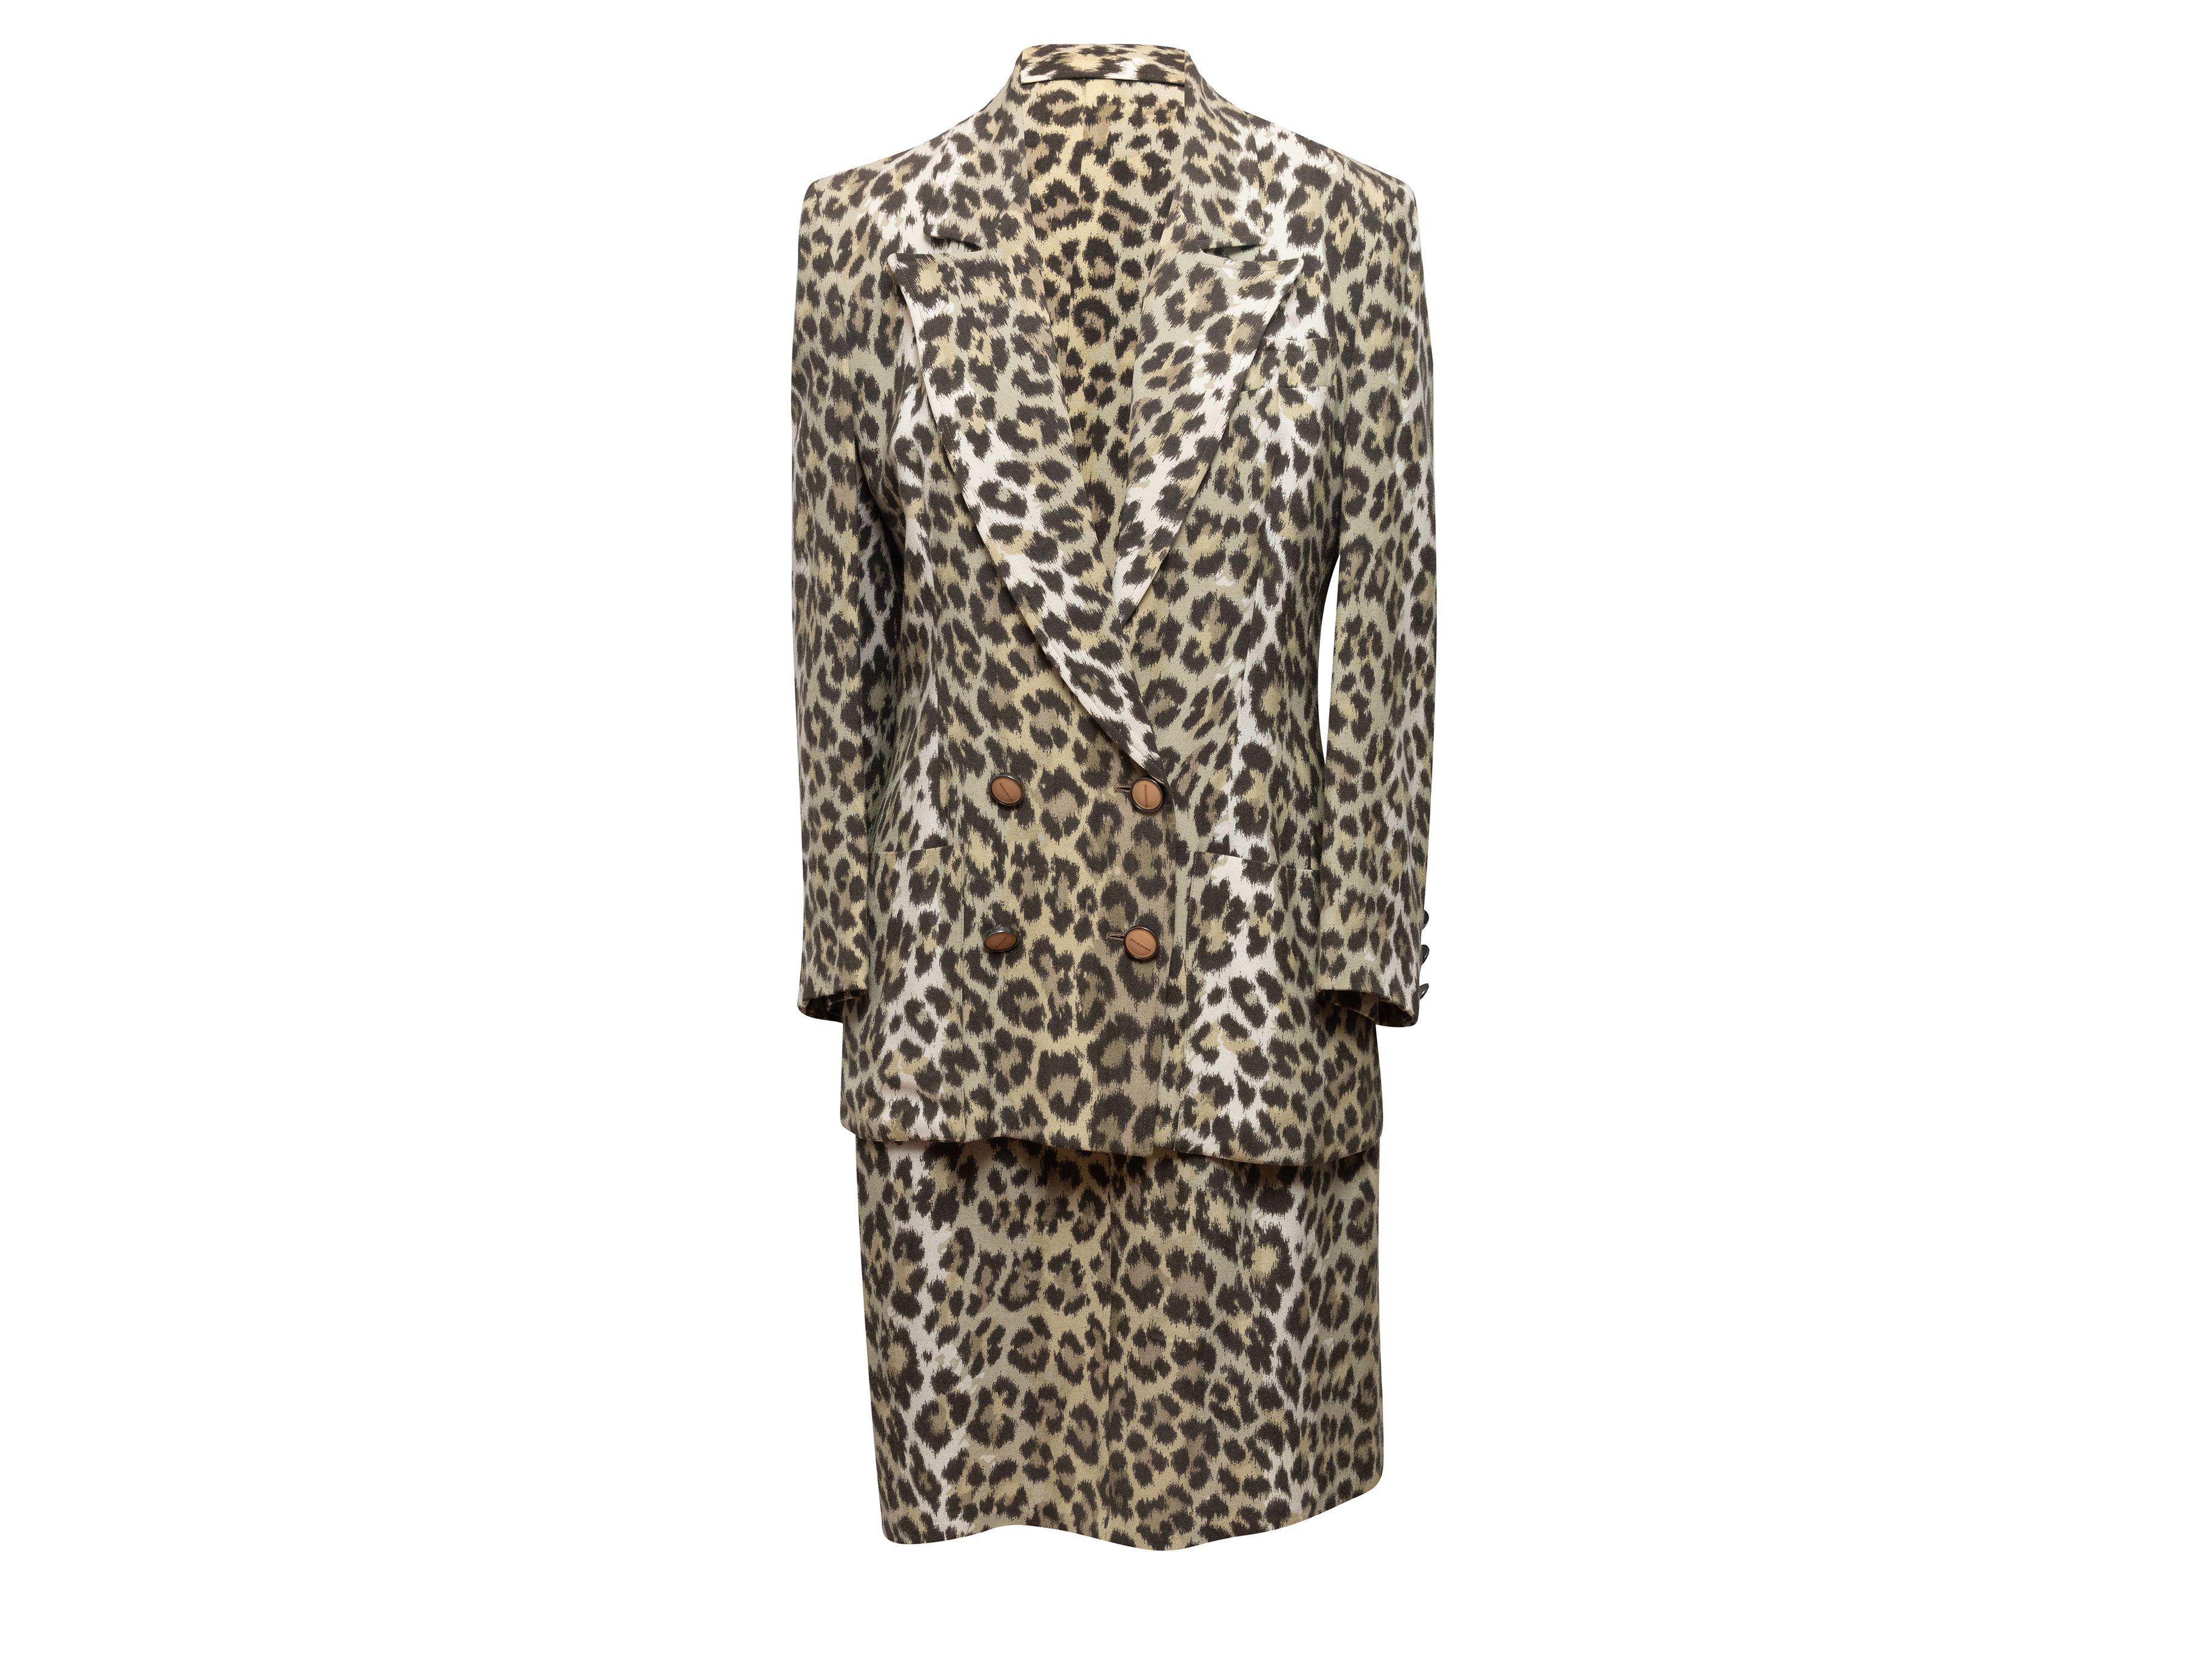 Jean Louis Scherrer Tan & Black Leopard Print Skirt Suit 2